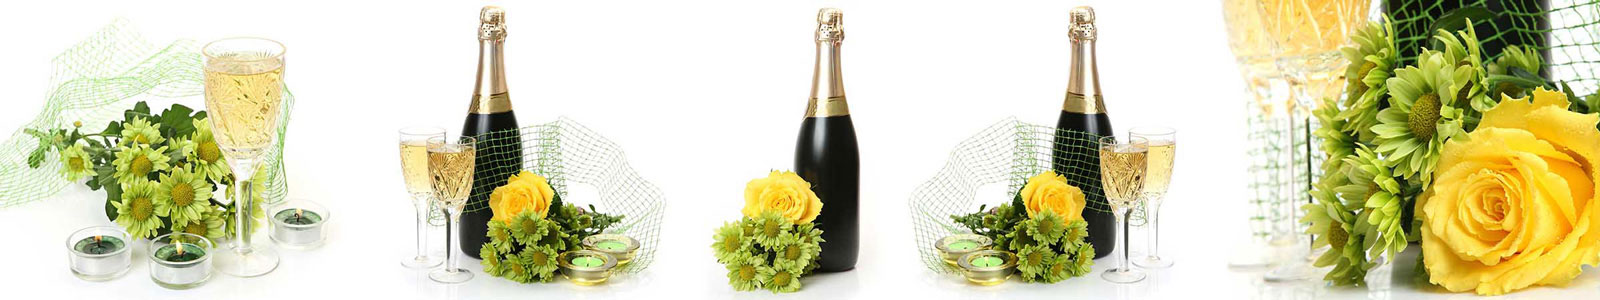 №3221 - Розы, шампанское и хризантемы